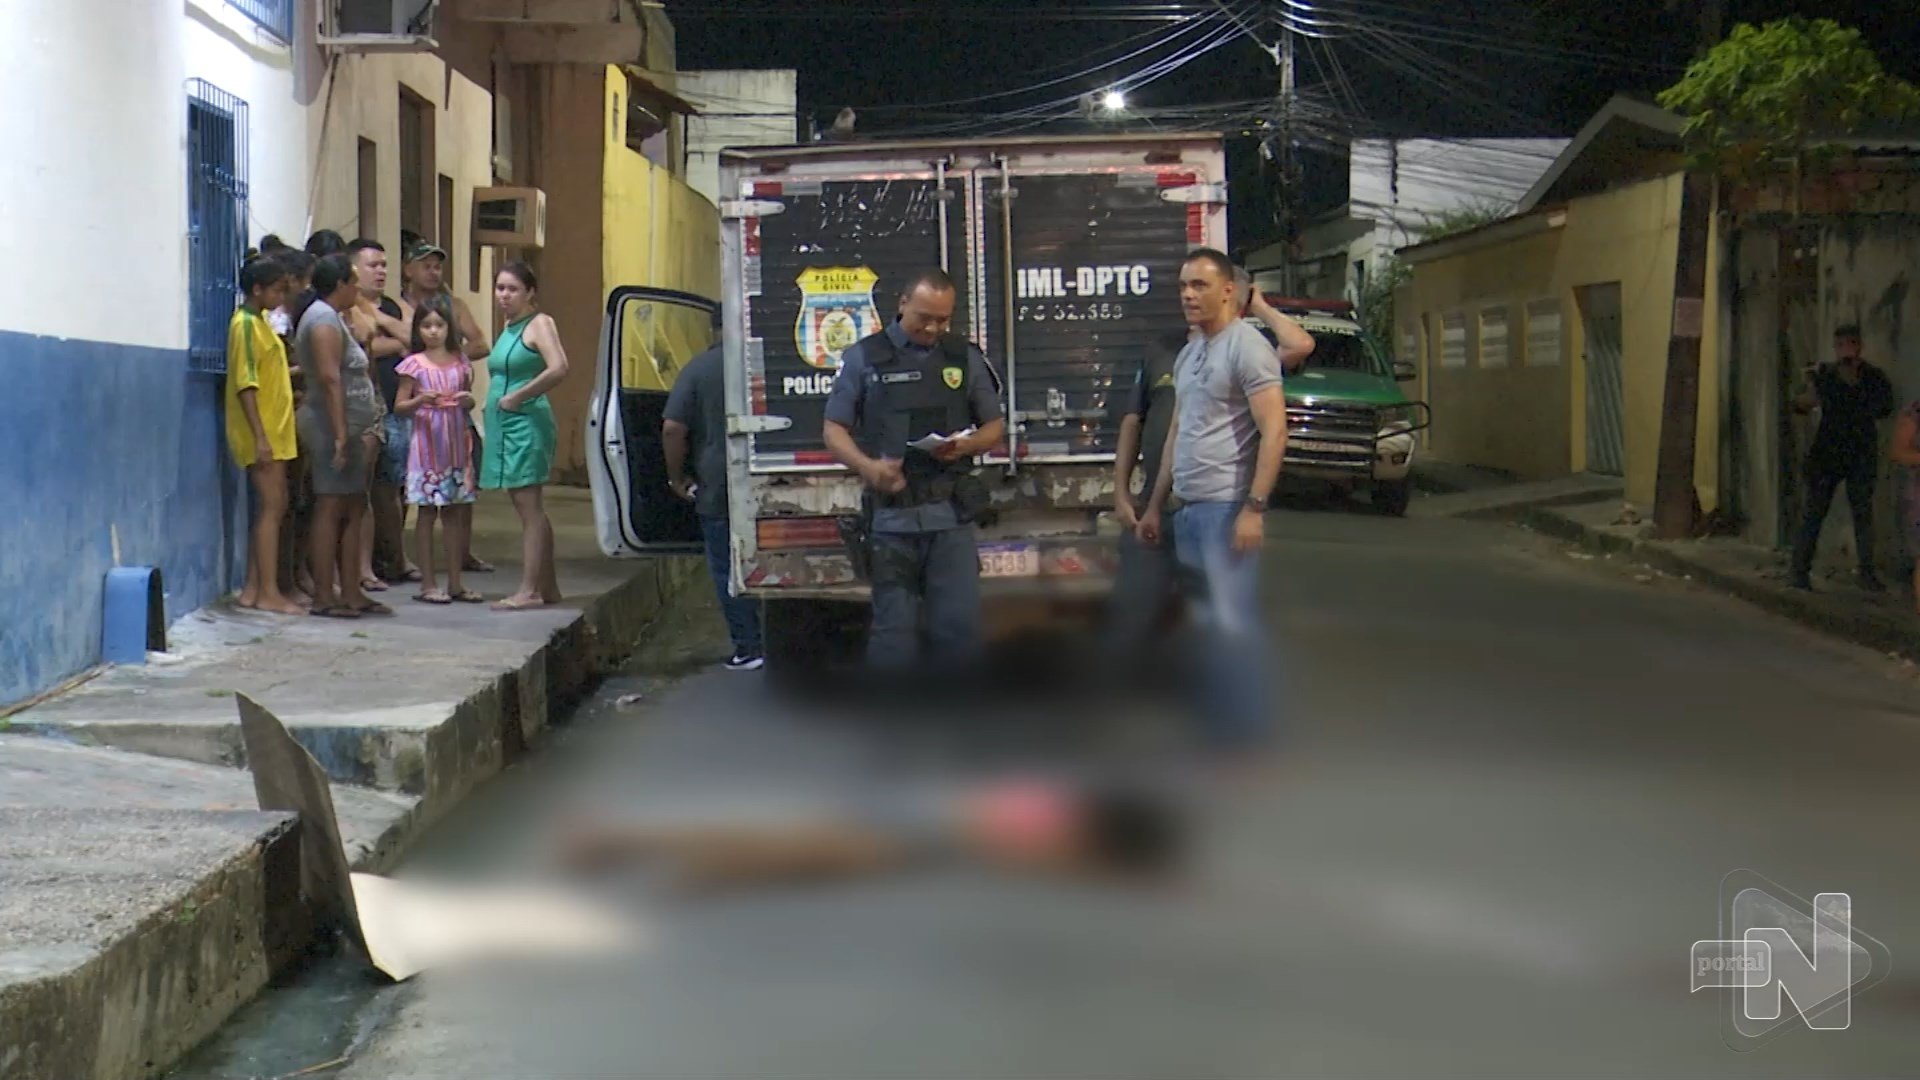 Vítima em situação de rua é morta baleada na Zona Norte de Manaus - Foto: Reprodução/TV Norte Amazonas